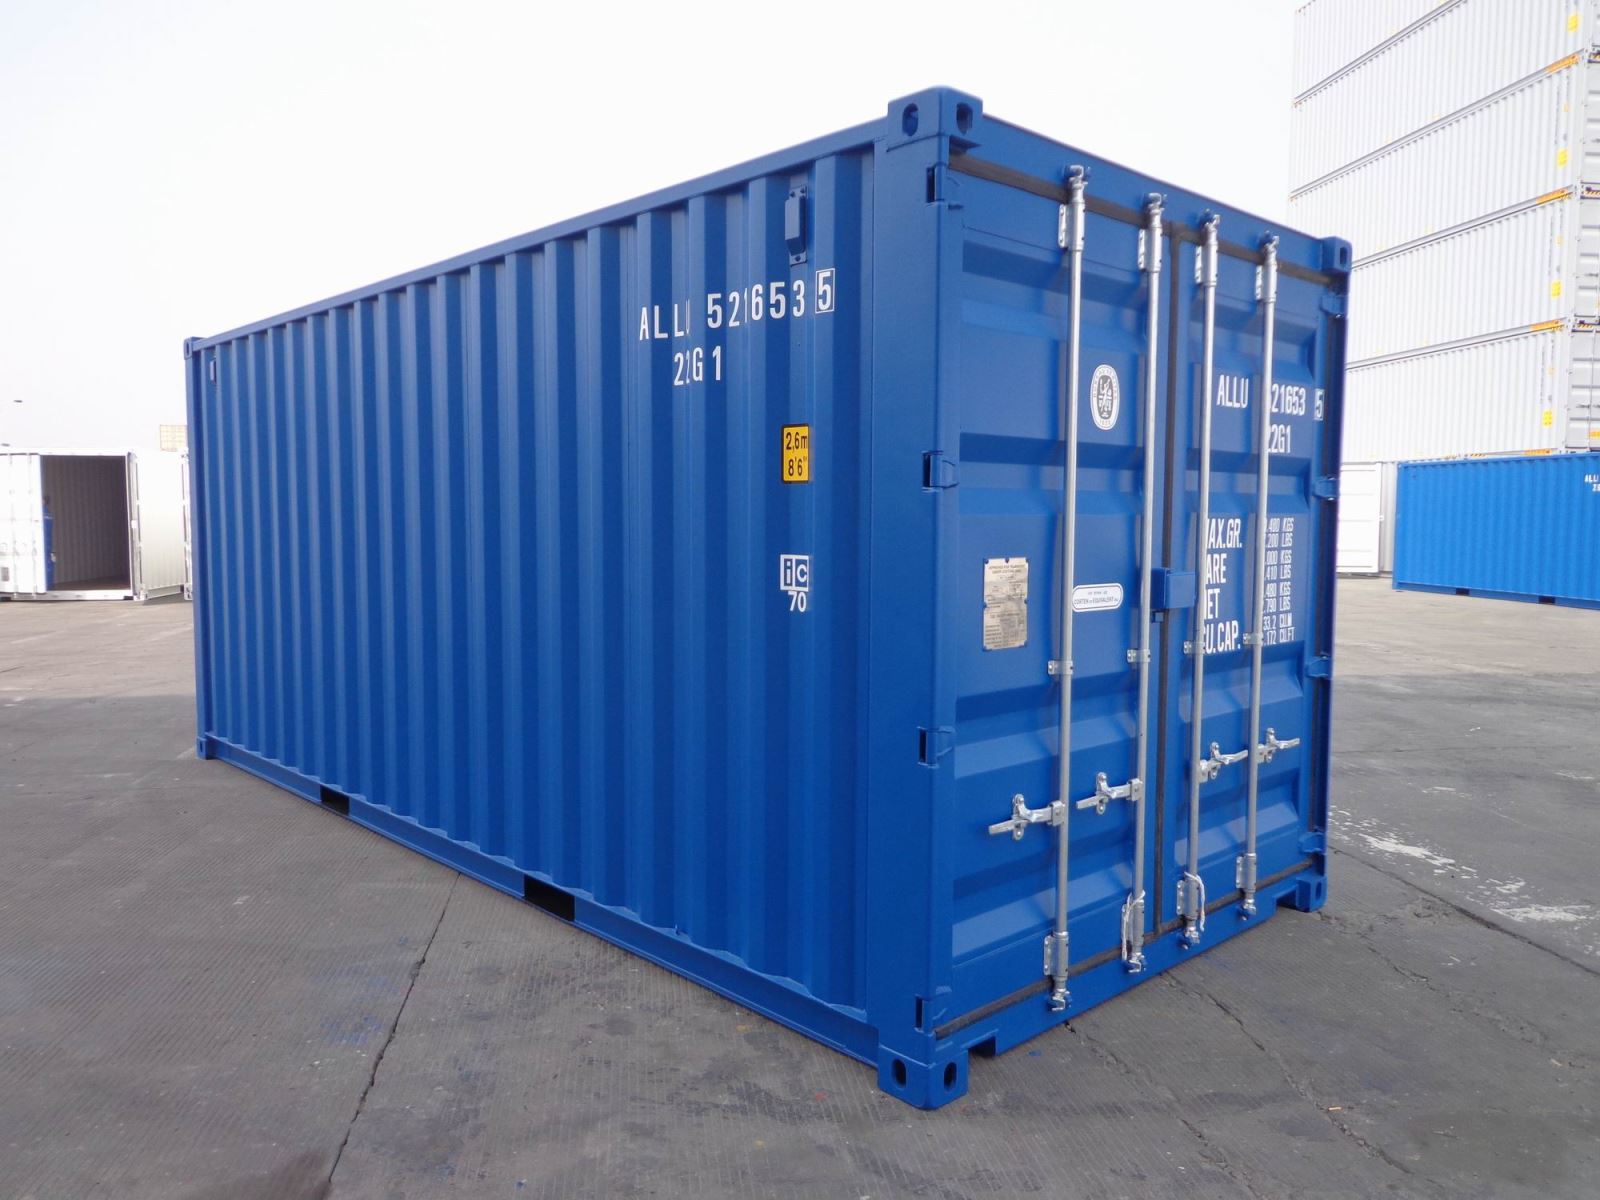 Bán container kho tại Hà Nam giá rẻ bất ngờ - Ảnh 2